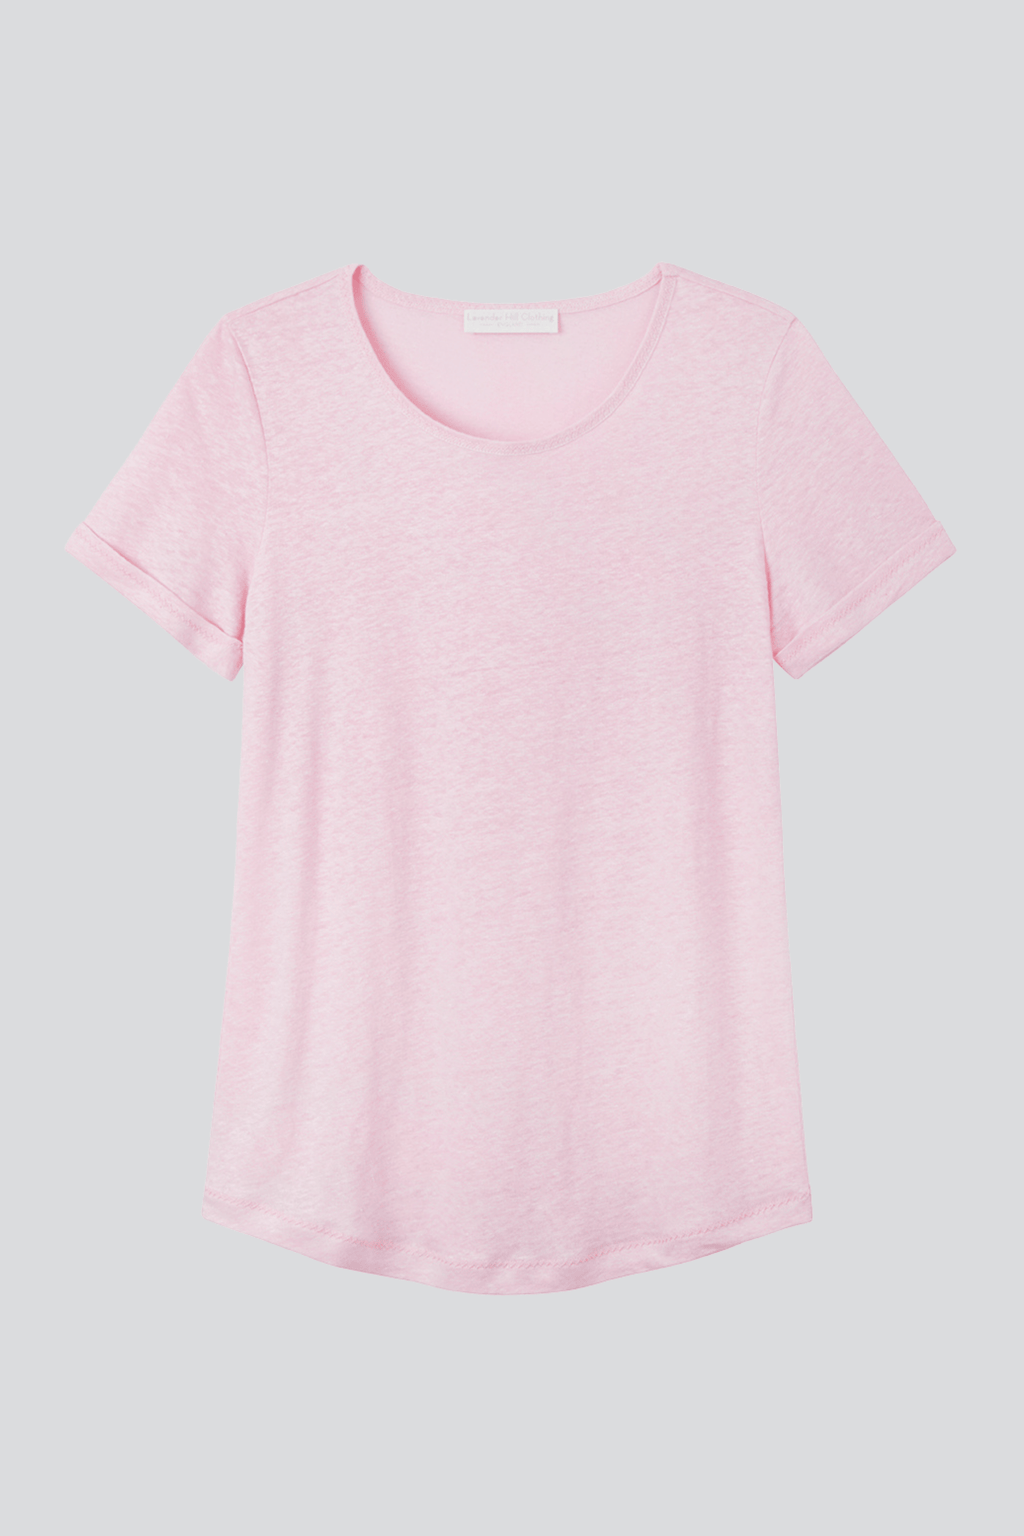 Women's Linen T-shirts | Short & Long Sleeve Linen Tees | Lavender Hill ...